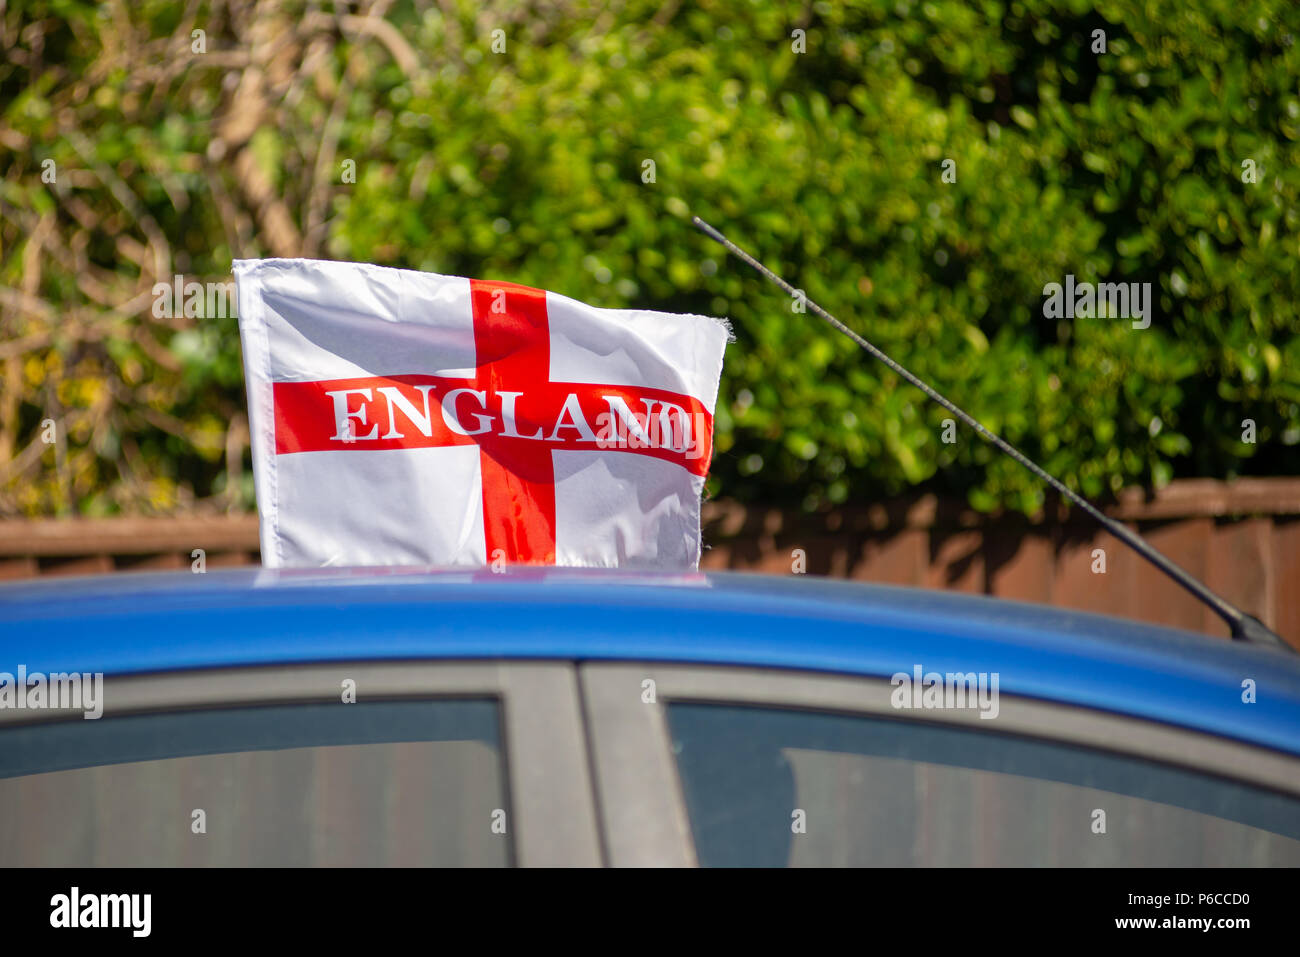 Drapeau rouge et blanc Angleterre battant sur le toit d'une voiture bleue pendant la Coupe du Monde de Football 2018 Banque D'Images